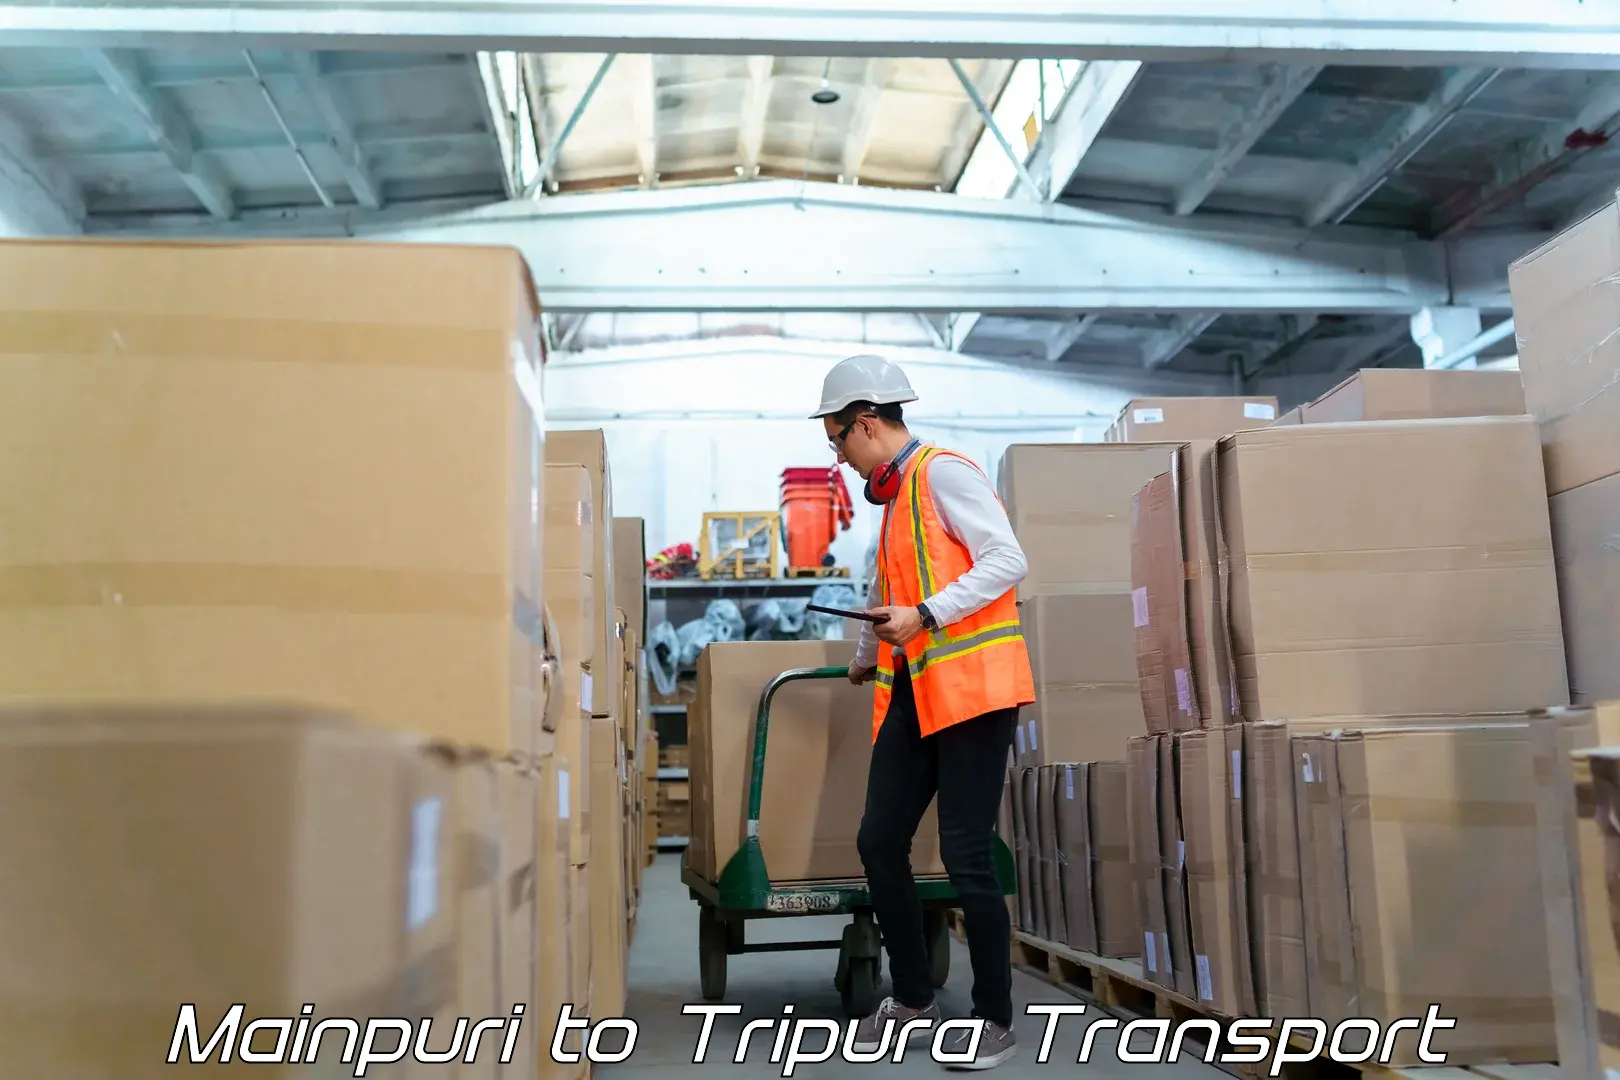 Furniture transport service in Mainpuri to Tripura